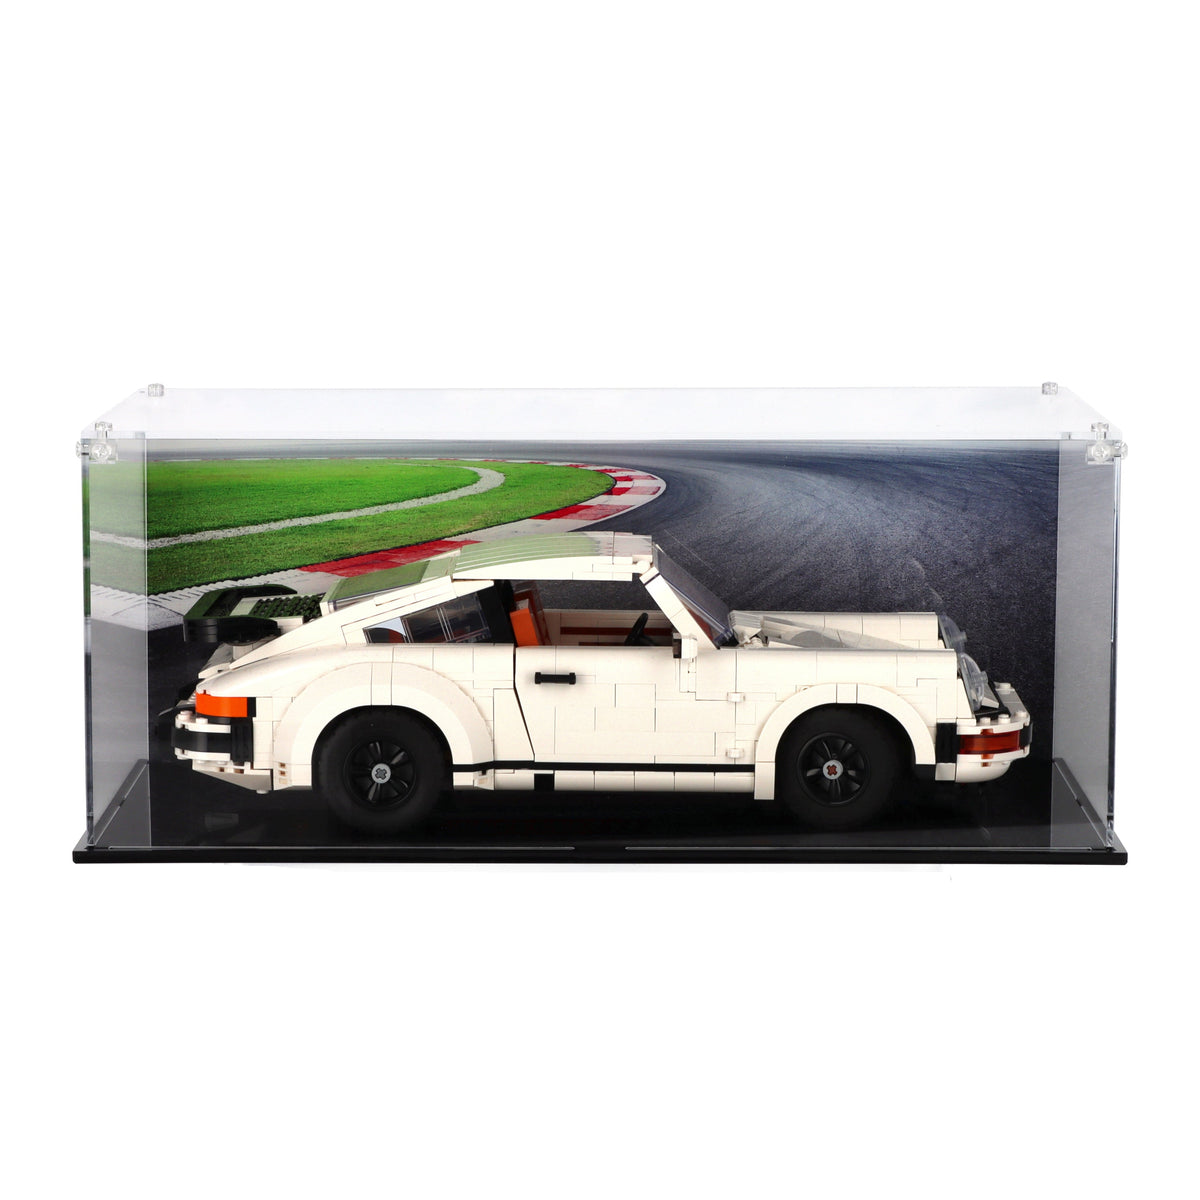 Lego 10295 Porsche 911 Display Case